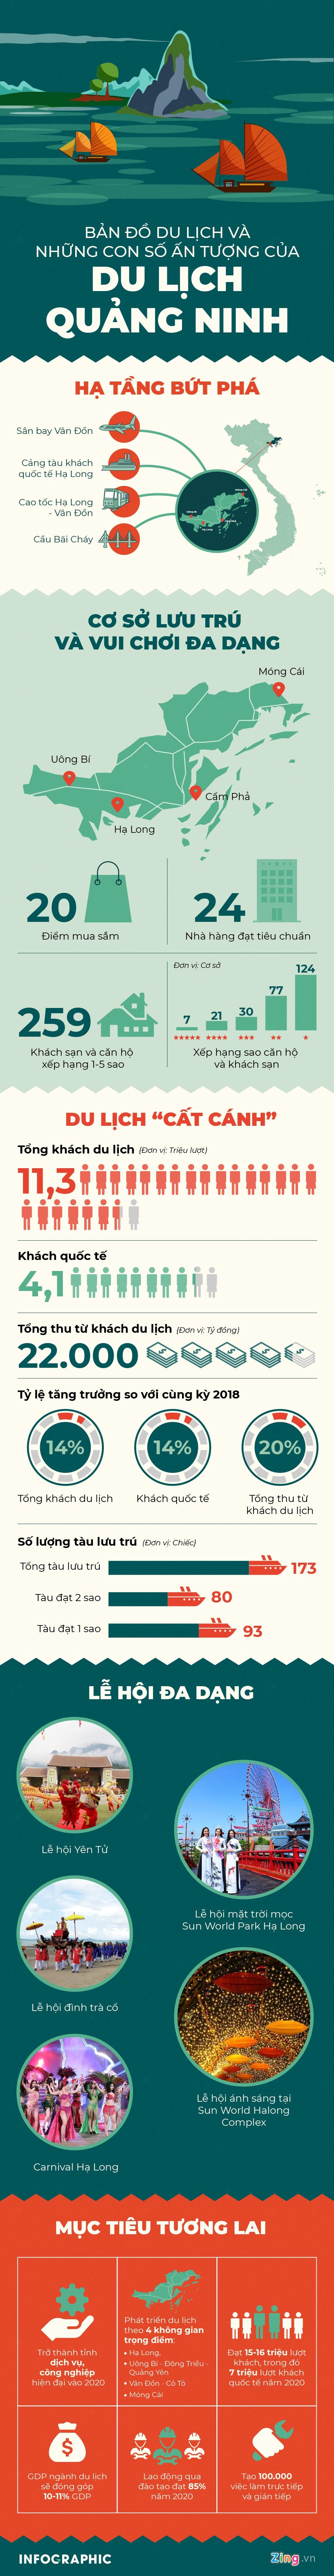 Những con số ấn tượng của du lịch Quảng Ninh-1